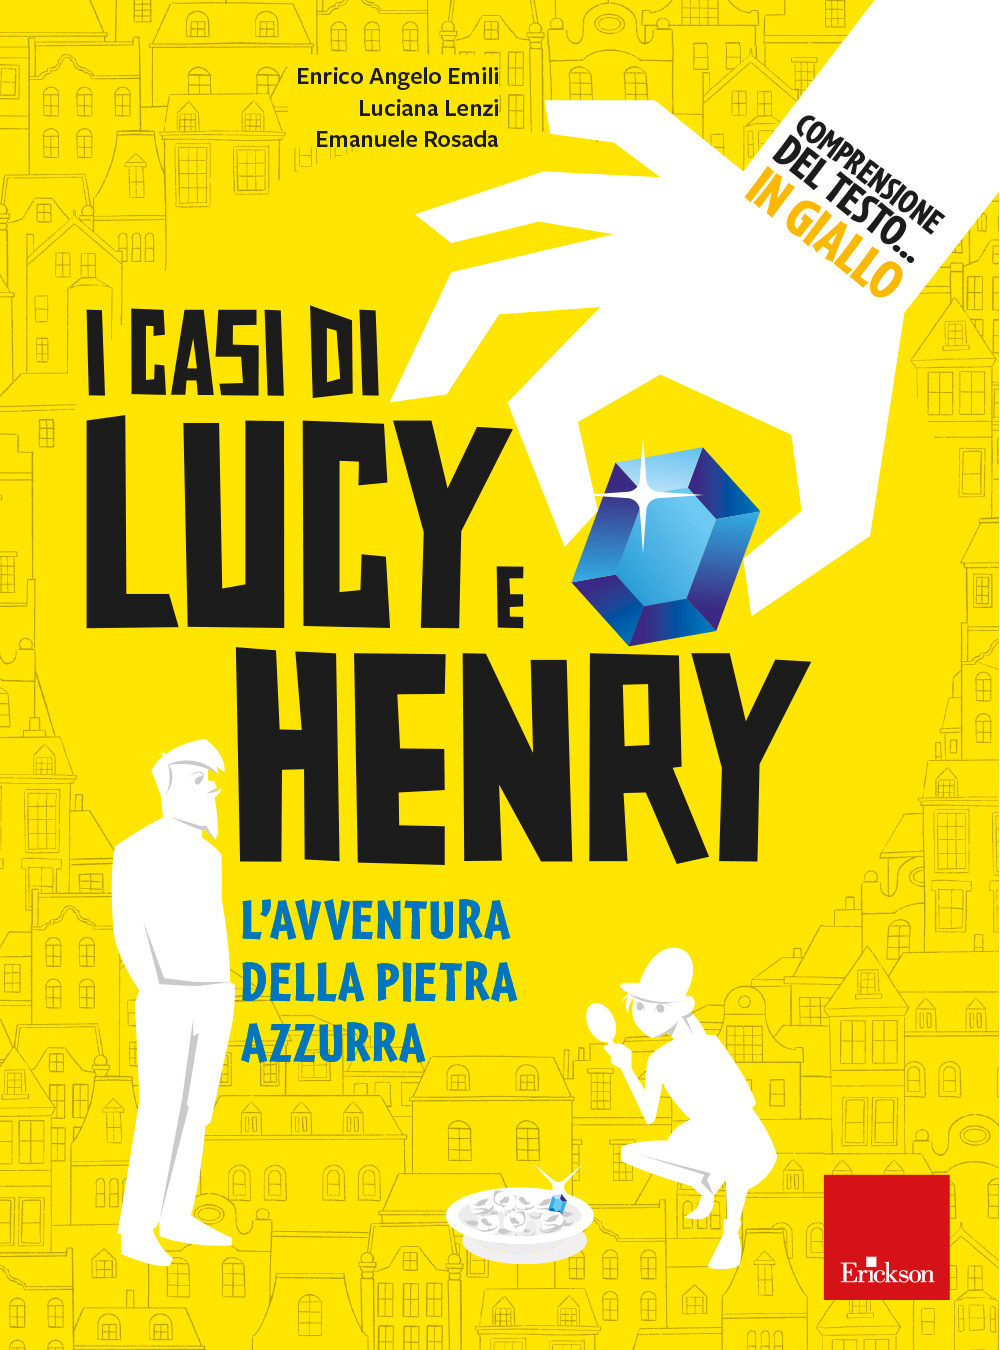 Comprensione del testo... In giallo. Vol. 2: I casi di Lucy e Henry. L'avventura della pietra azzurra